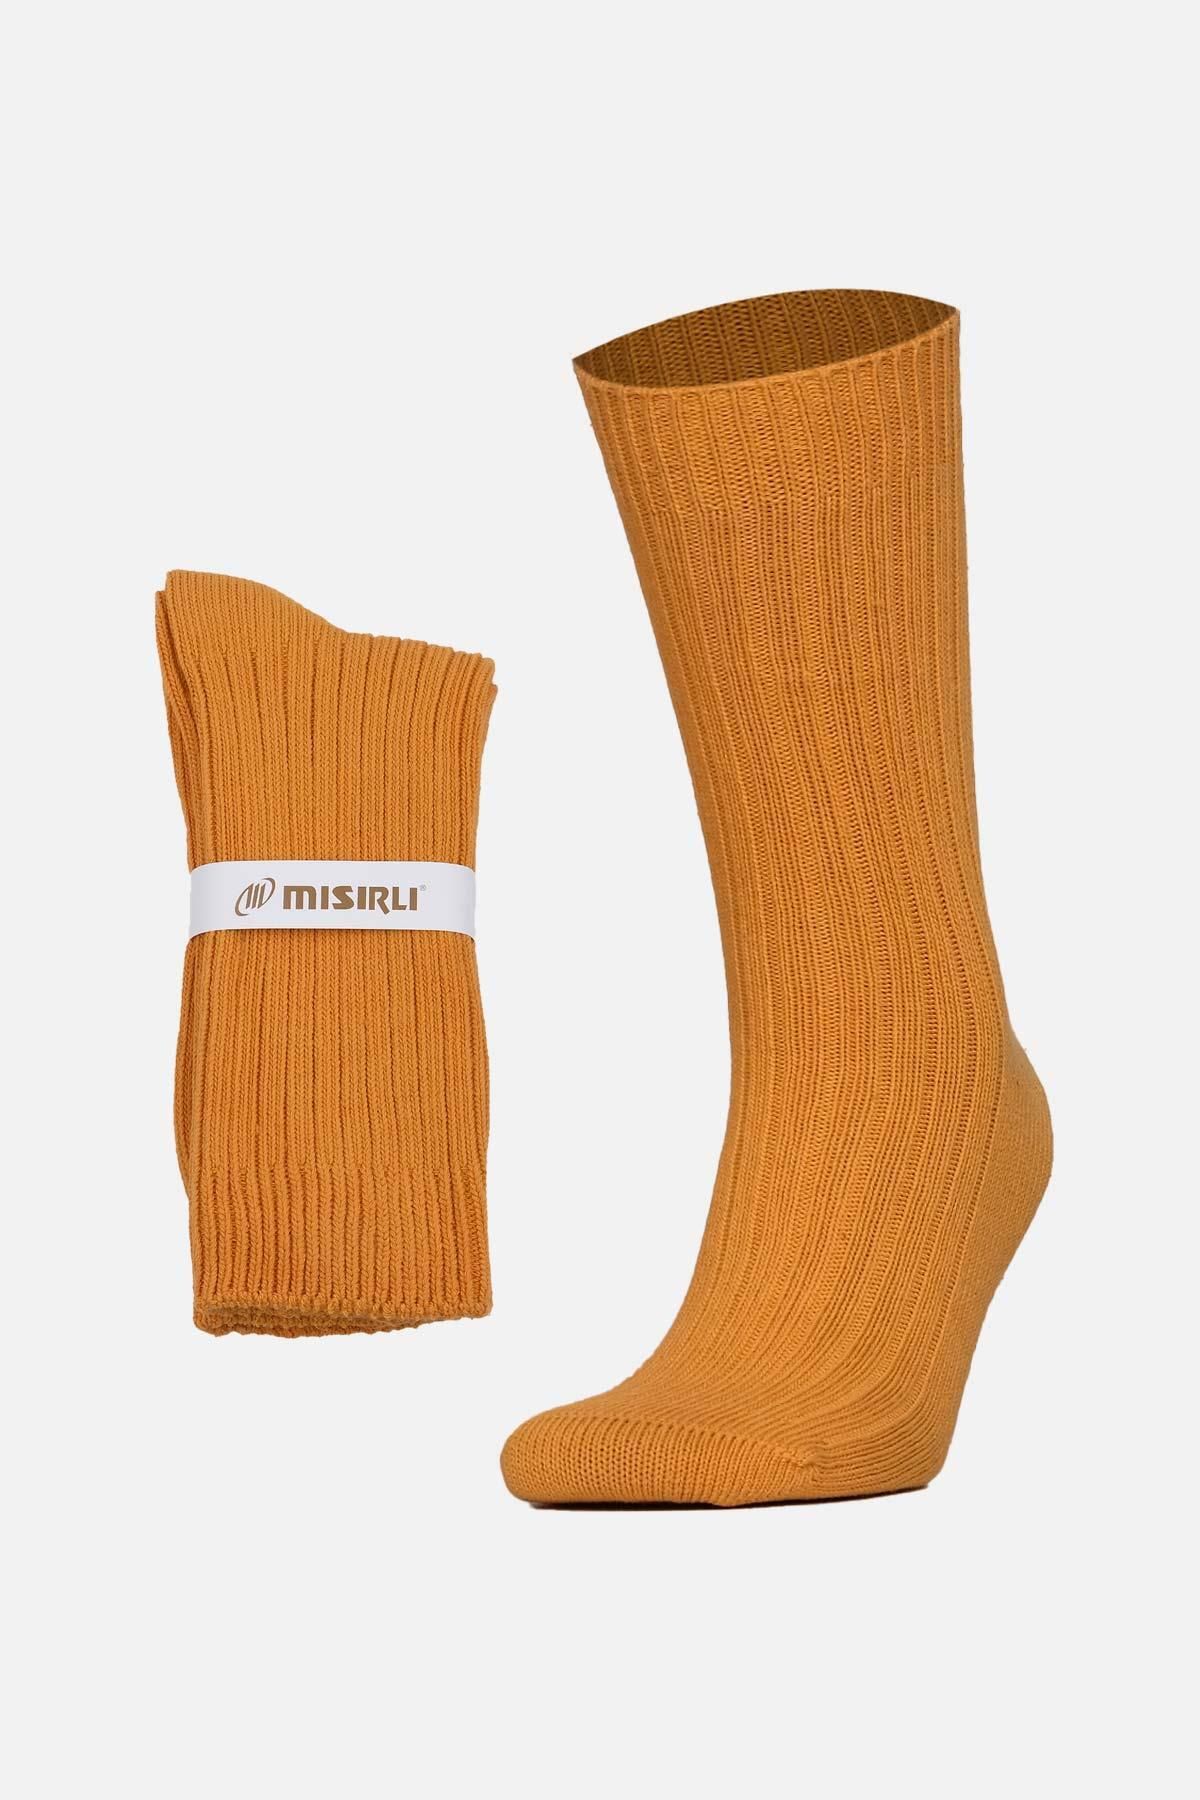 Mısırlı Unisex Pamuklu Bio Cotton Kışlık Turuncu Soket Çorap M 3093a T